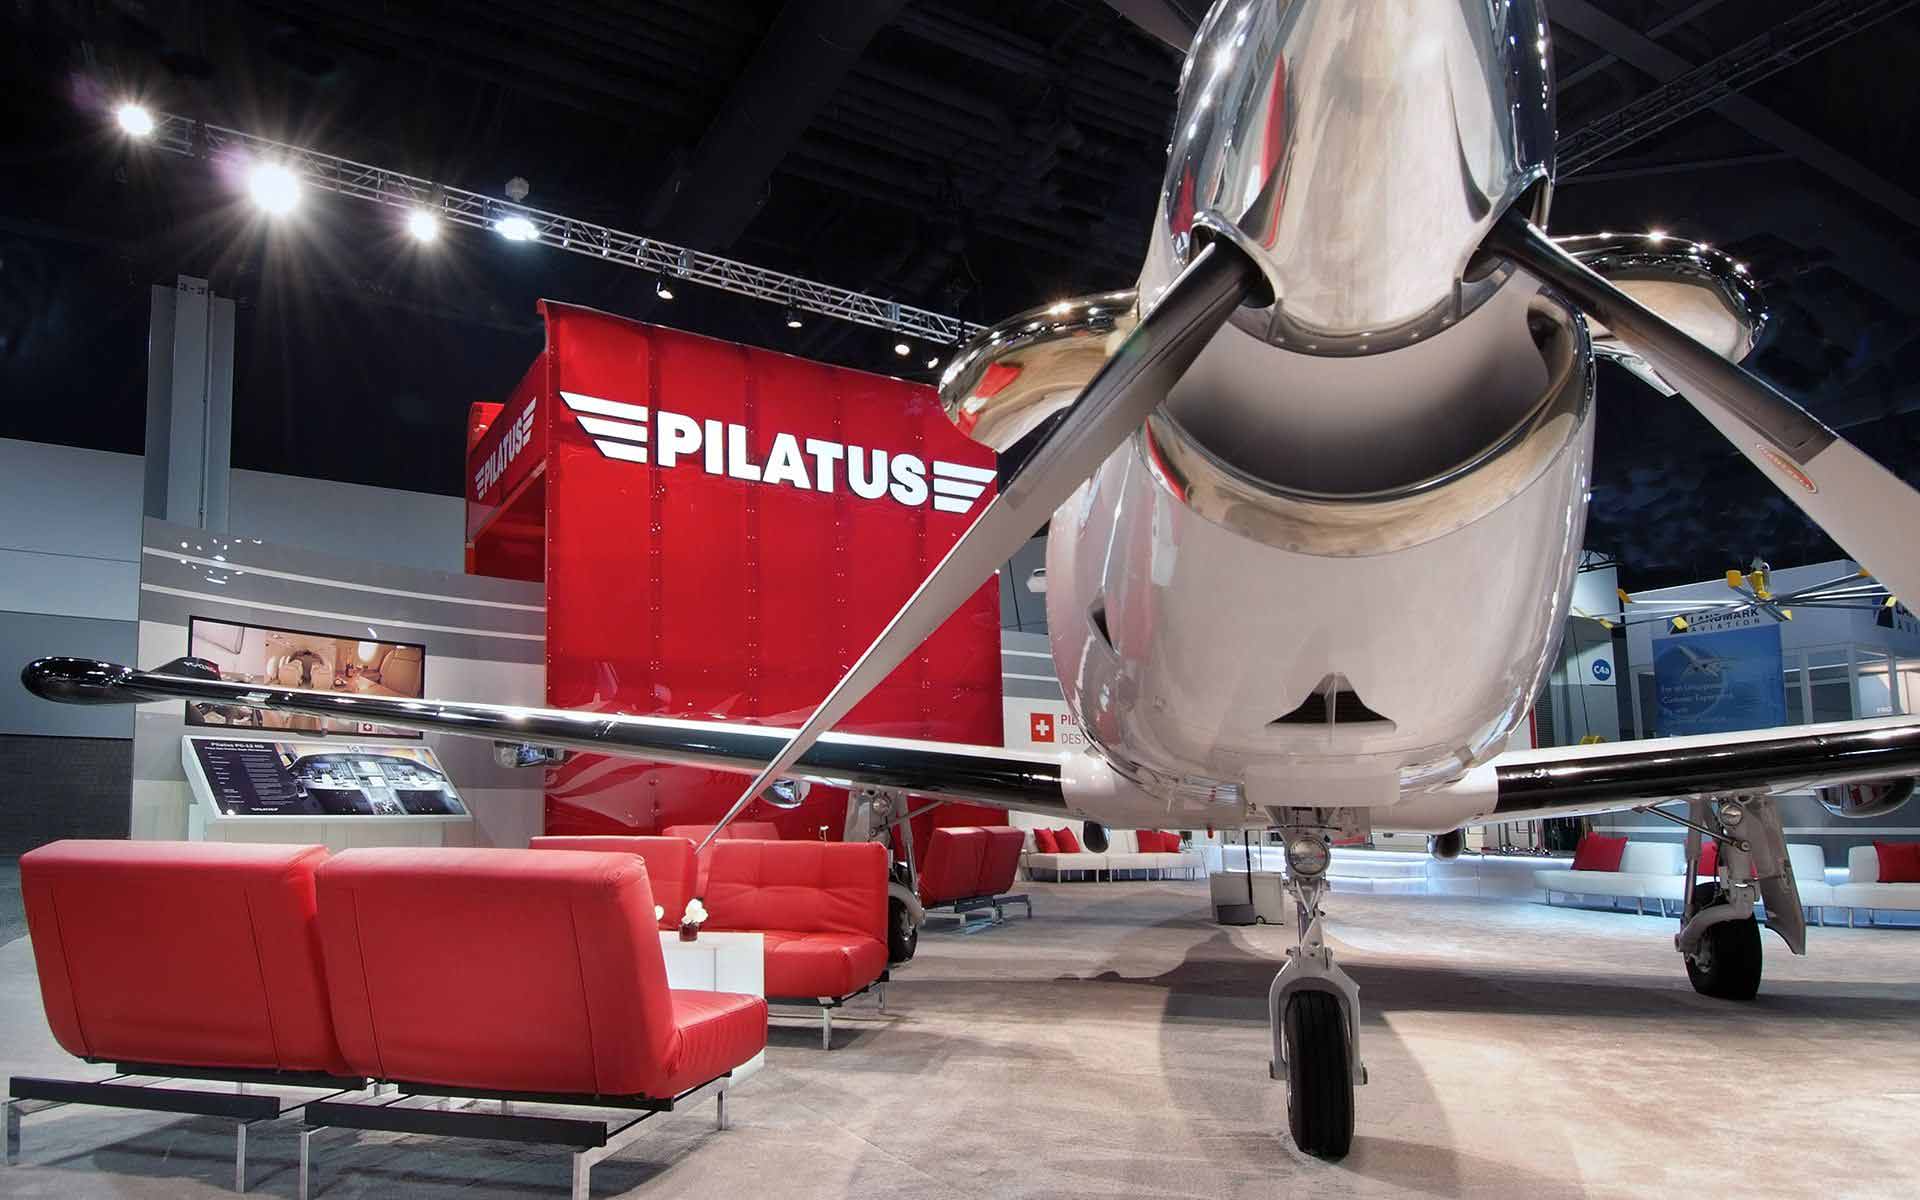 pilatus plane exhibit